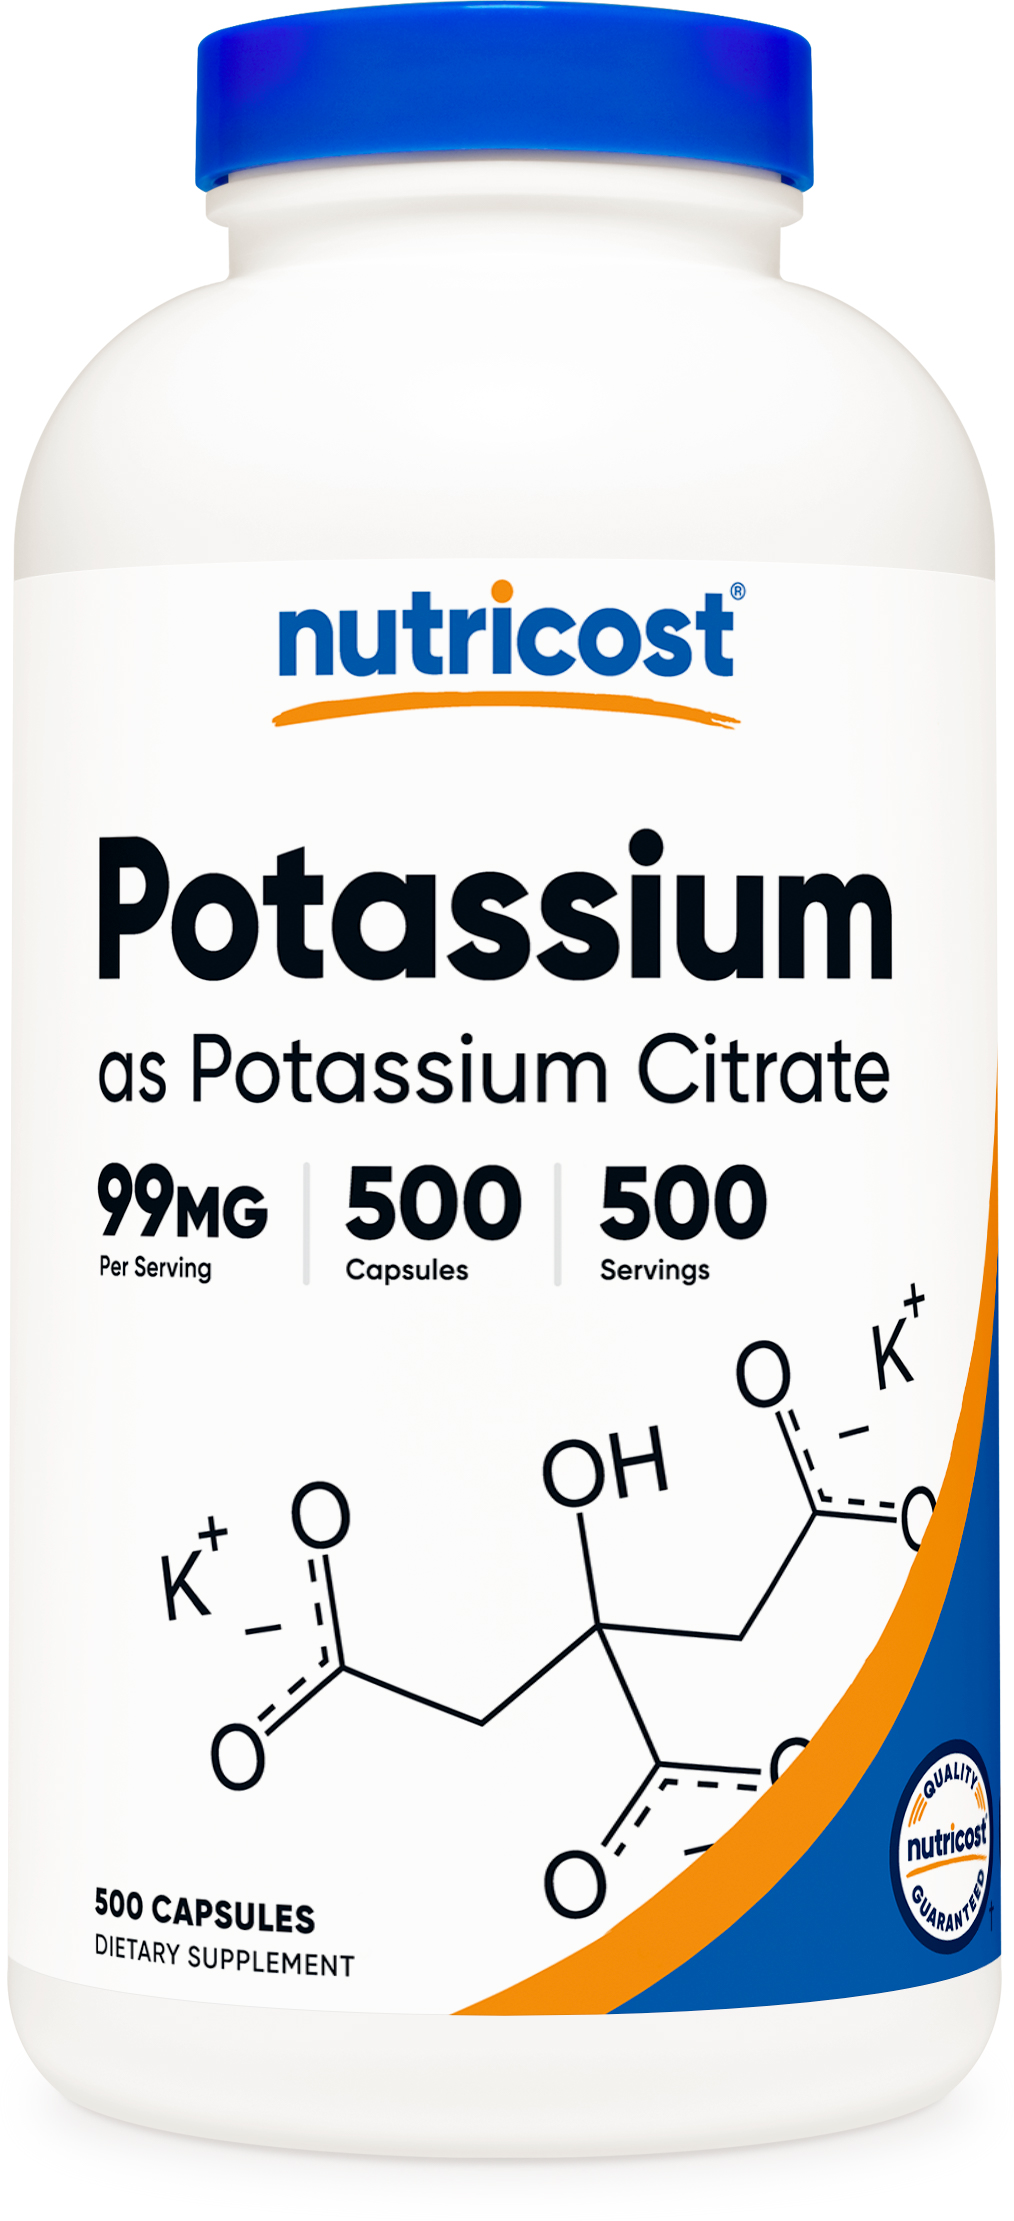 nutricost potassium citrate capsules bottle